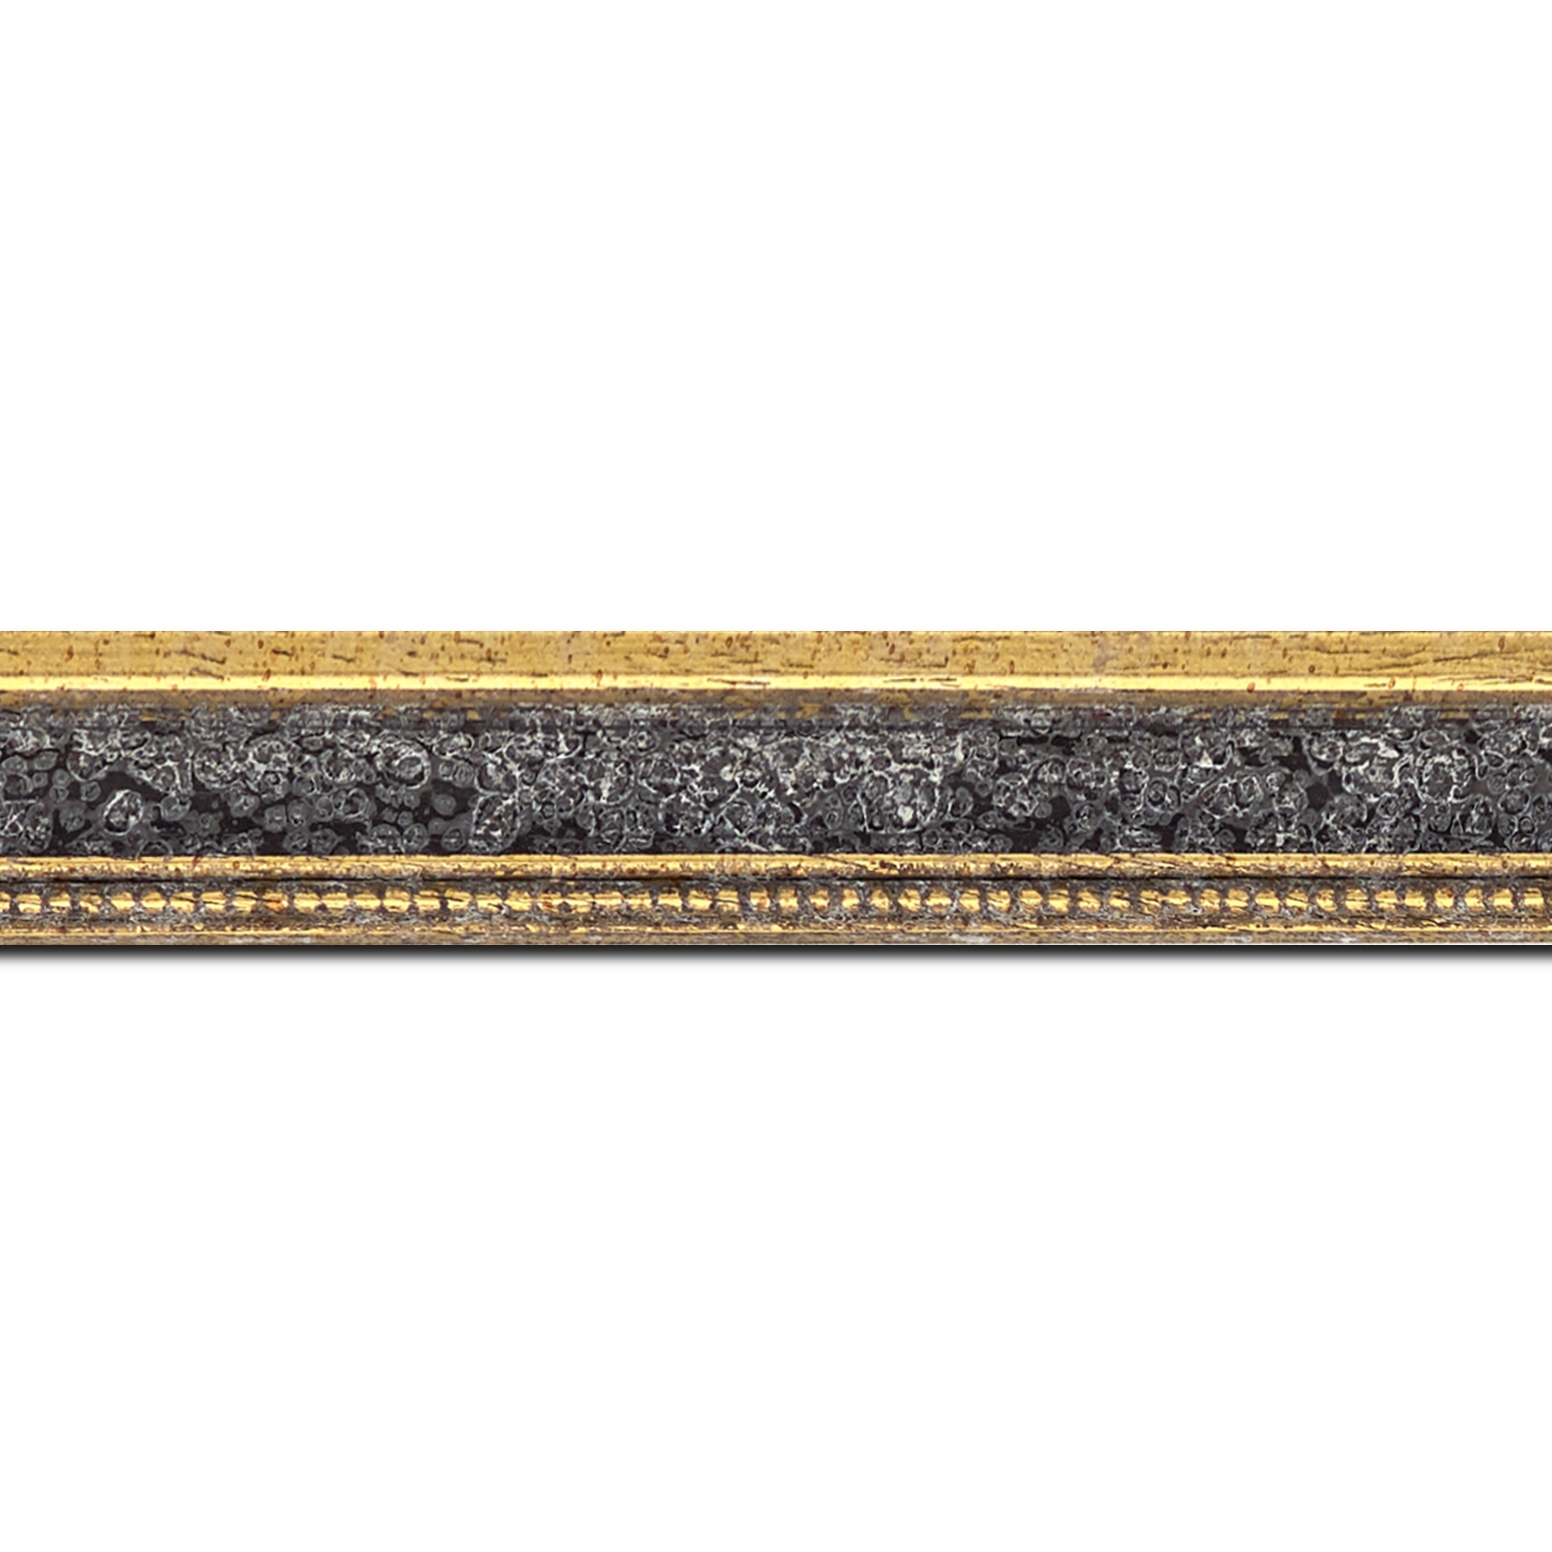 Baguette longueur 1.40m bois profil incurvé largeur 2.4cm  or antique gorge gris noirci vieilli filet perle or